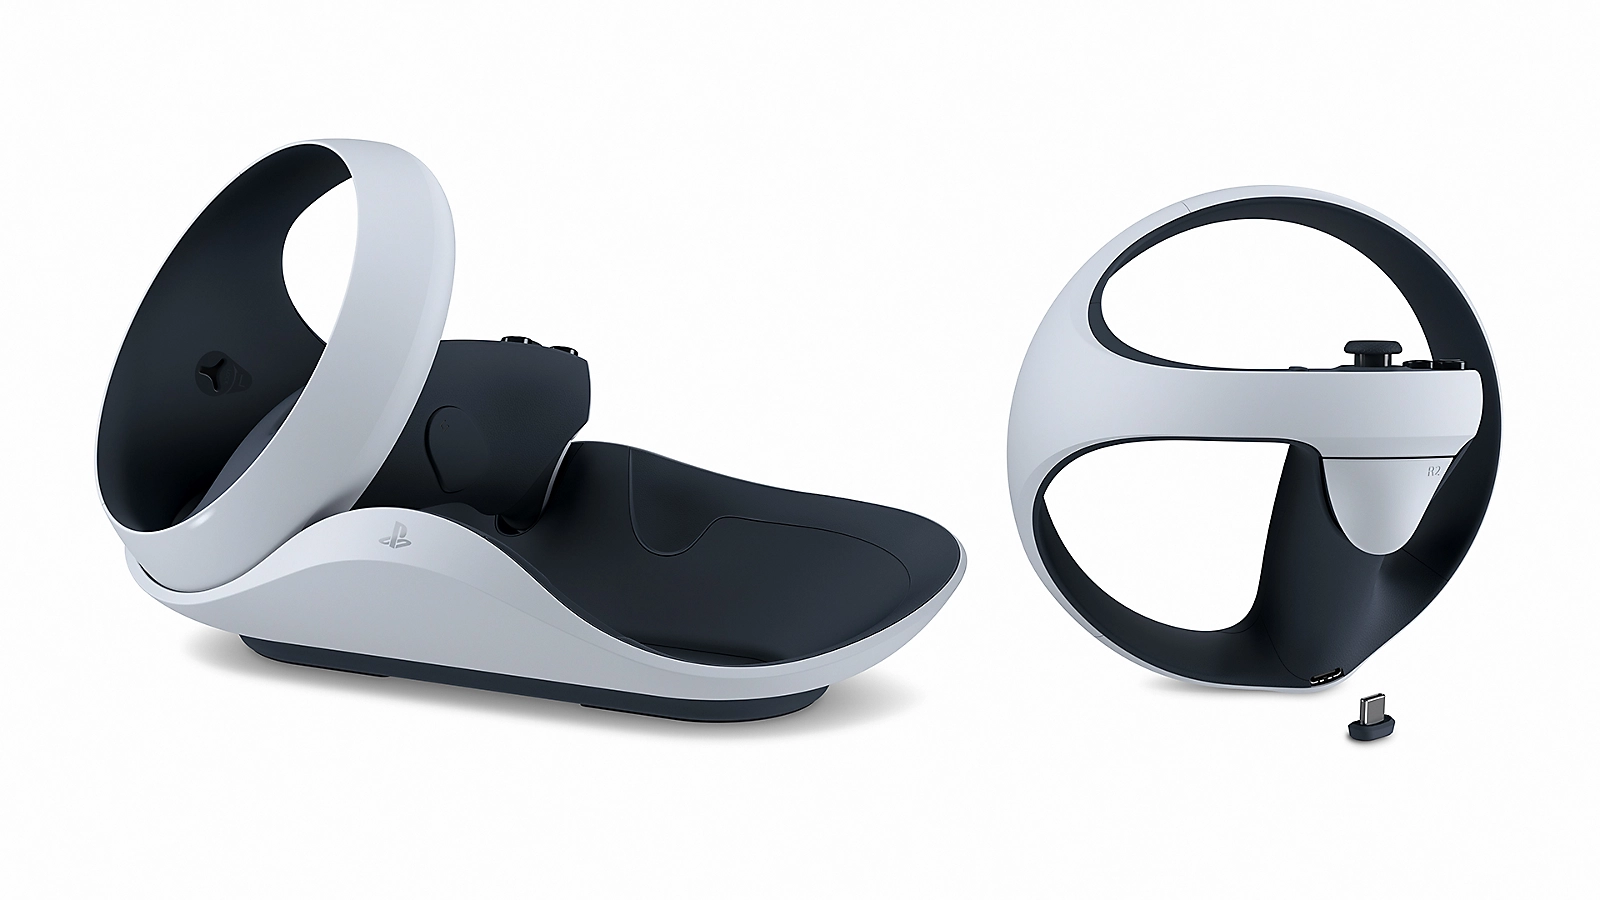 開封品】PS5 PlayStation VR2 充電器付き-